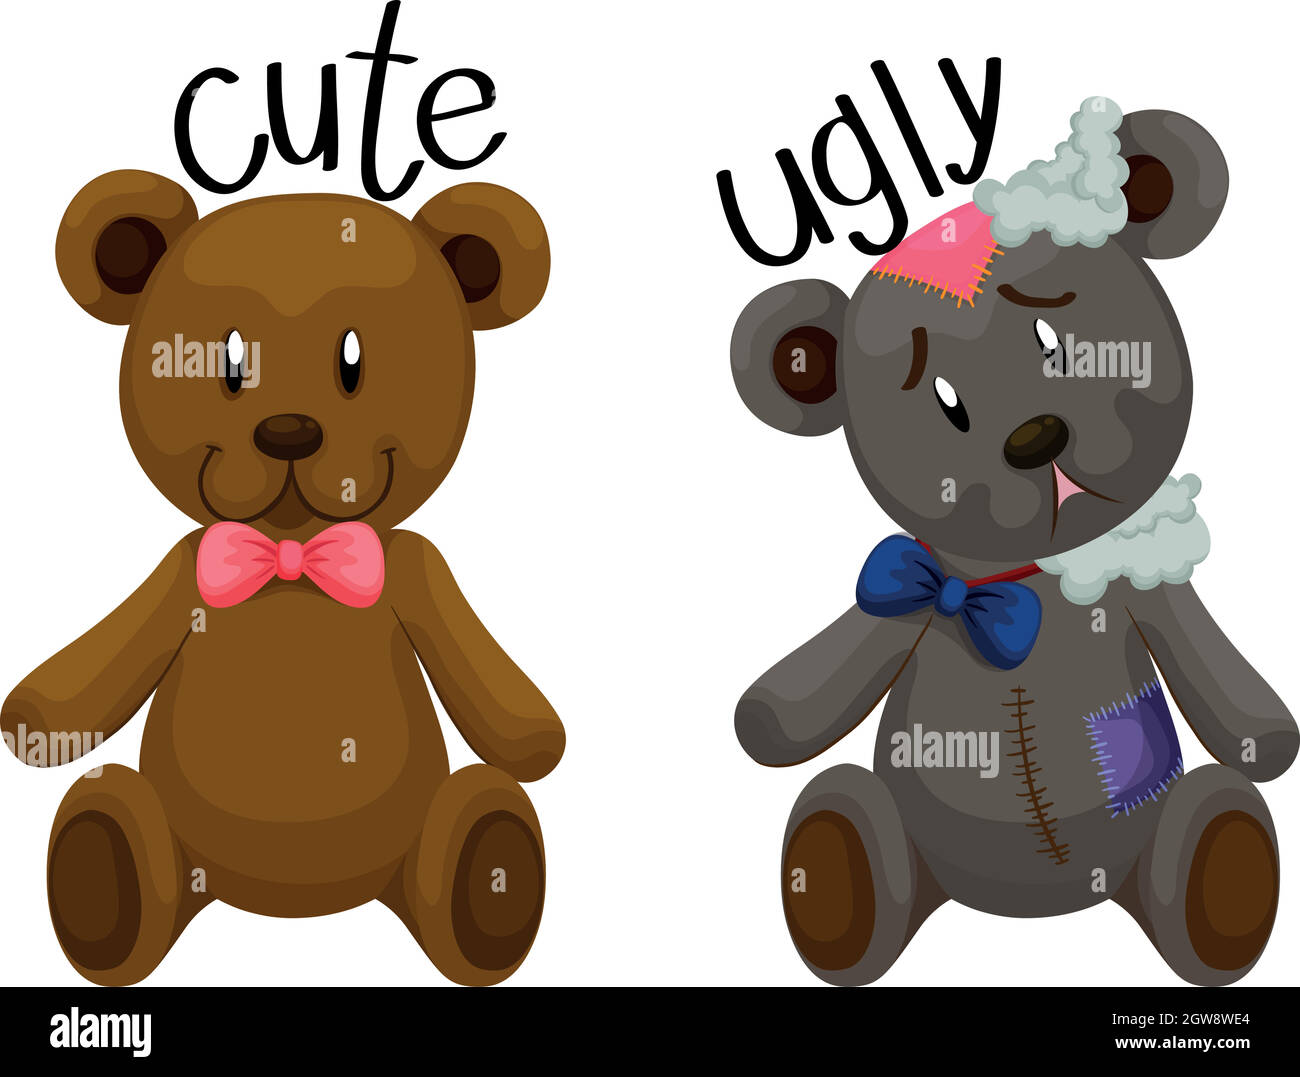 Cute teddy bear and ugly teddy bear Stock Vector Image & Art - Alamy